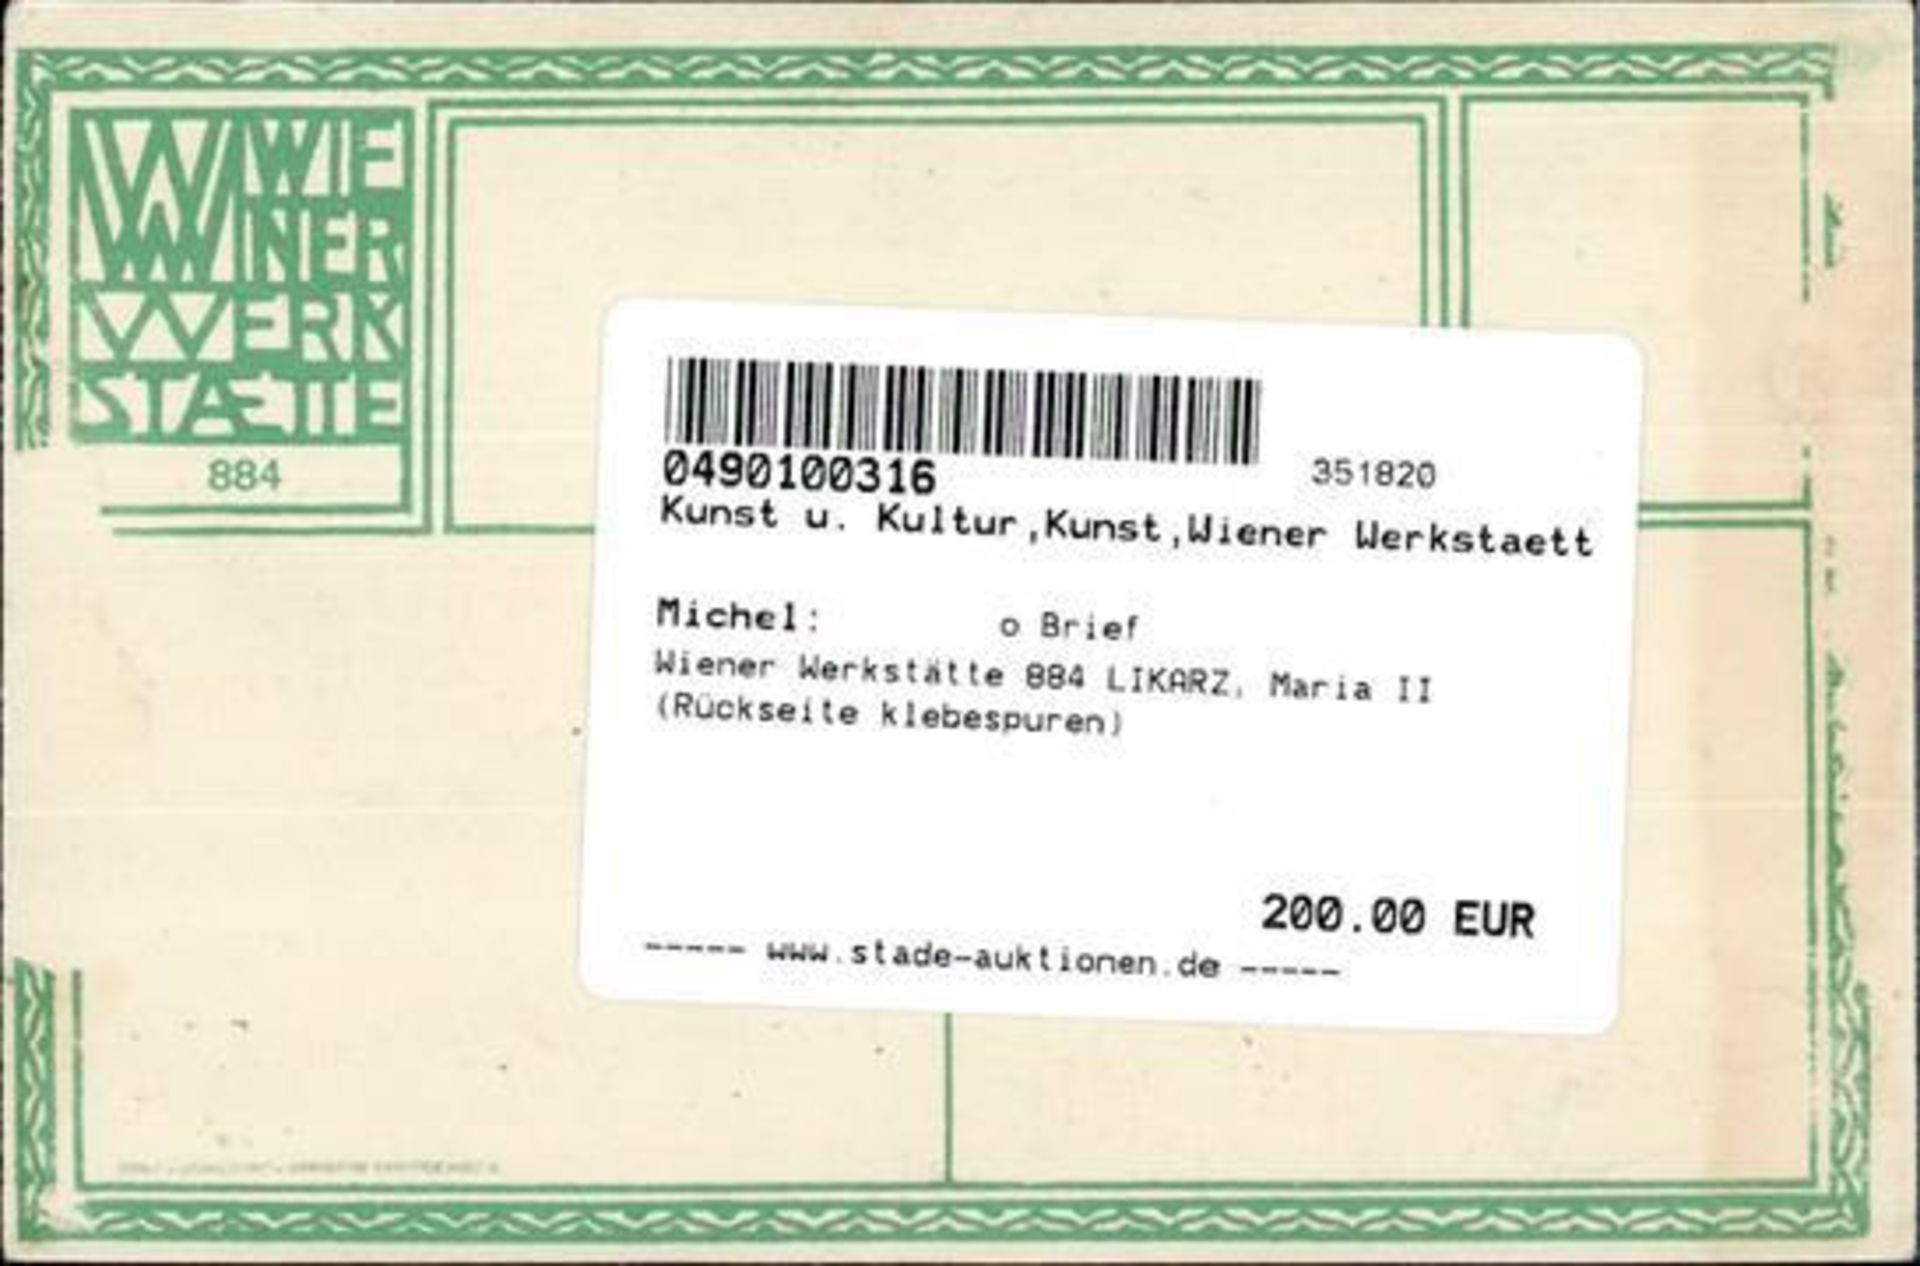 Wiener Werkstätte 884 LIKARZ, Maria II (Rückseite Klebespuren) - Bild 2 aus 2